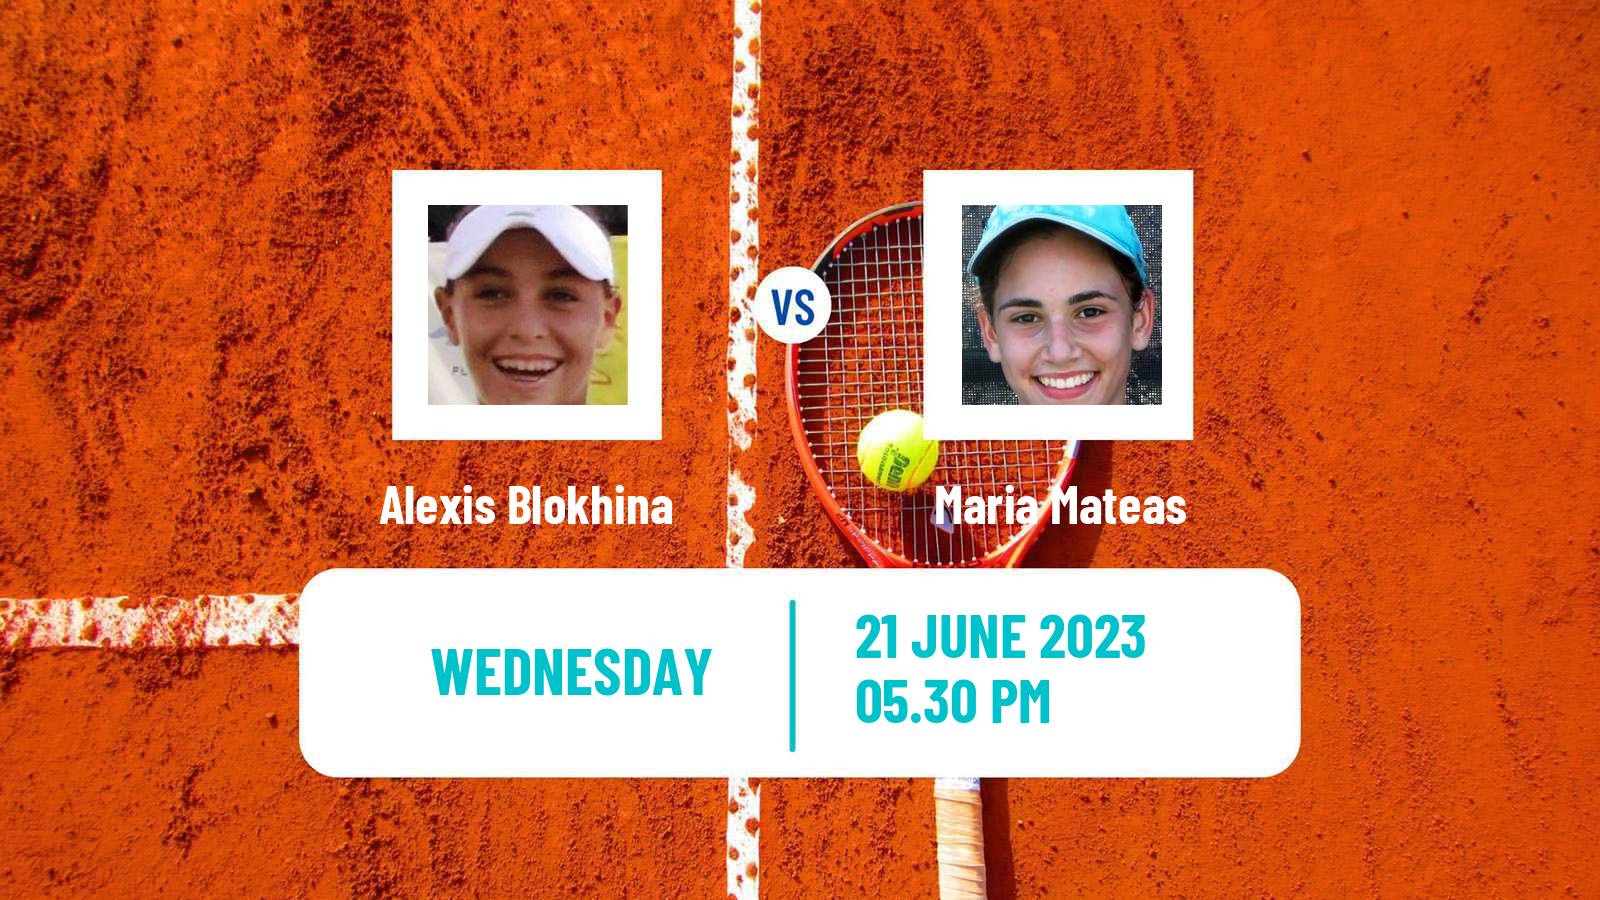 Tennis ITF W25 Wichita 2 Women Alexis Blokhina - Maria Mateas